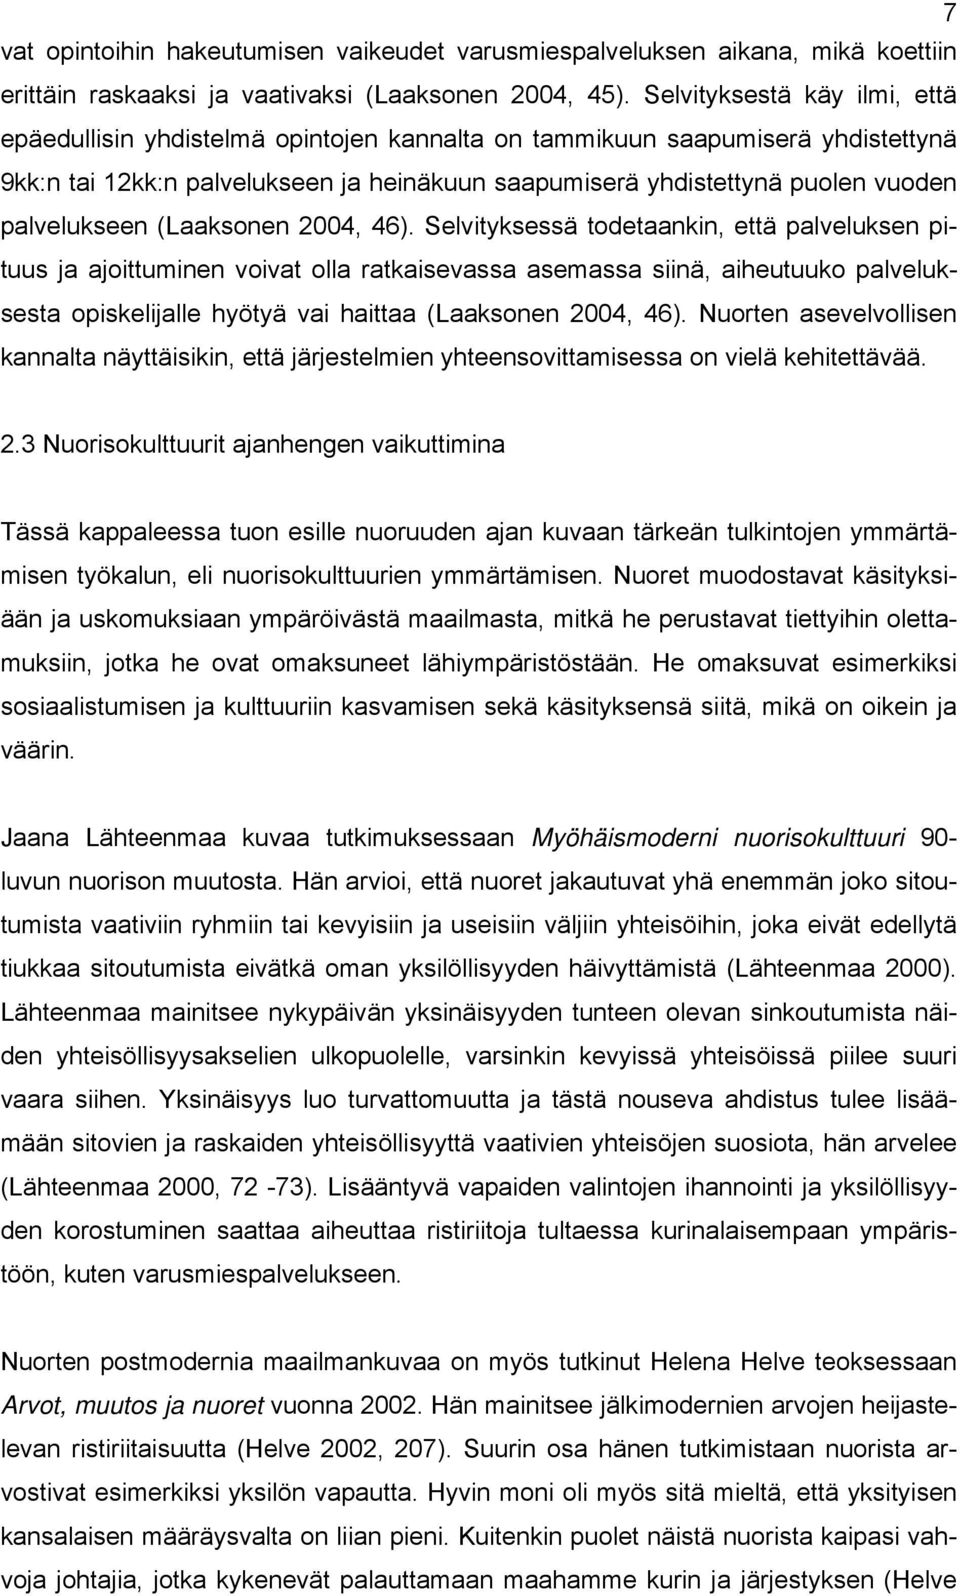 palvelukseen (Laaksonen 2004, 46).